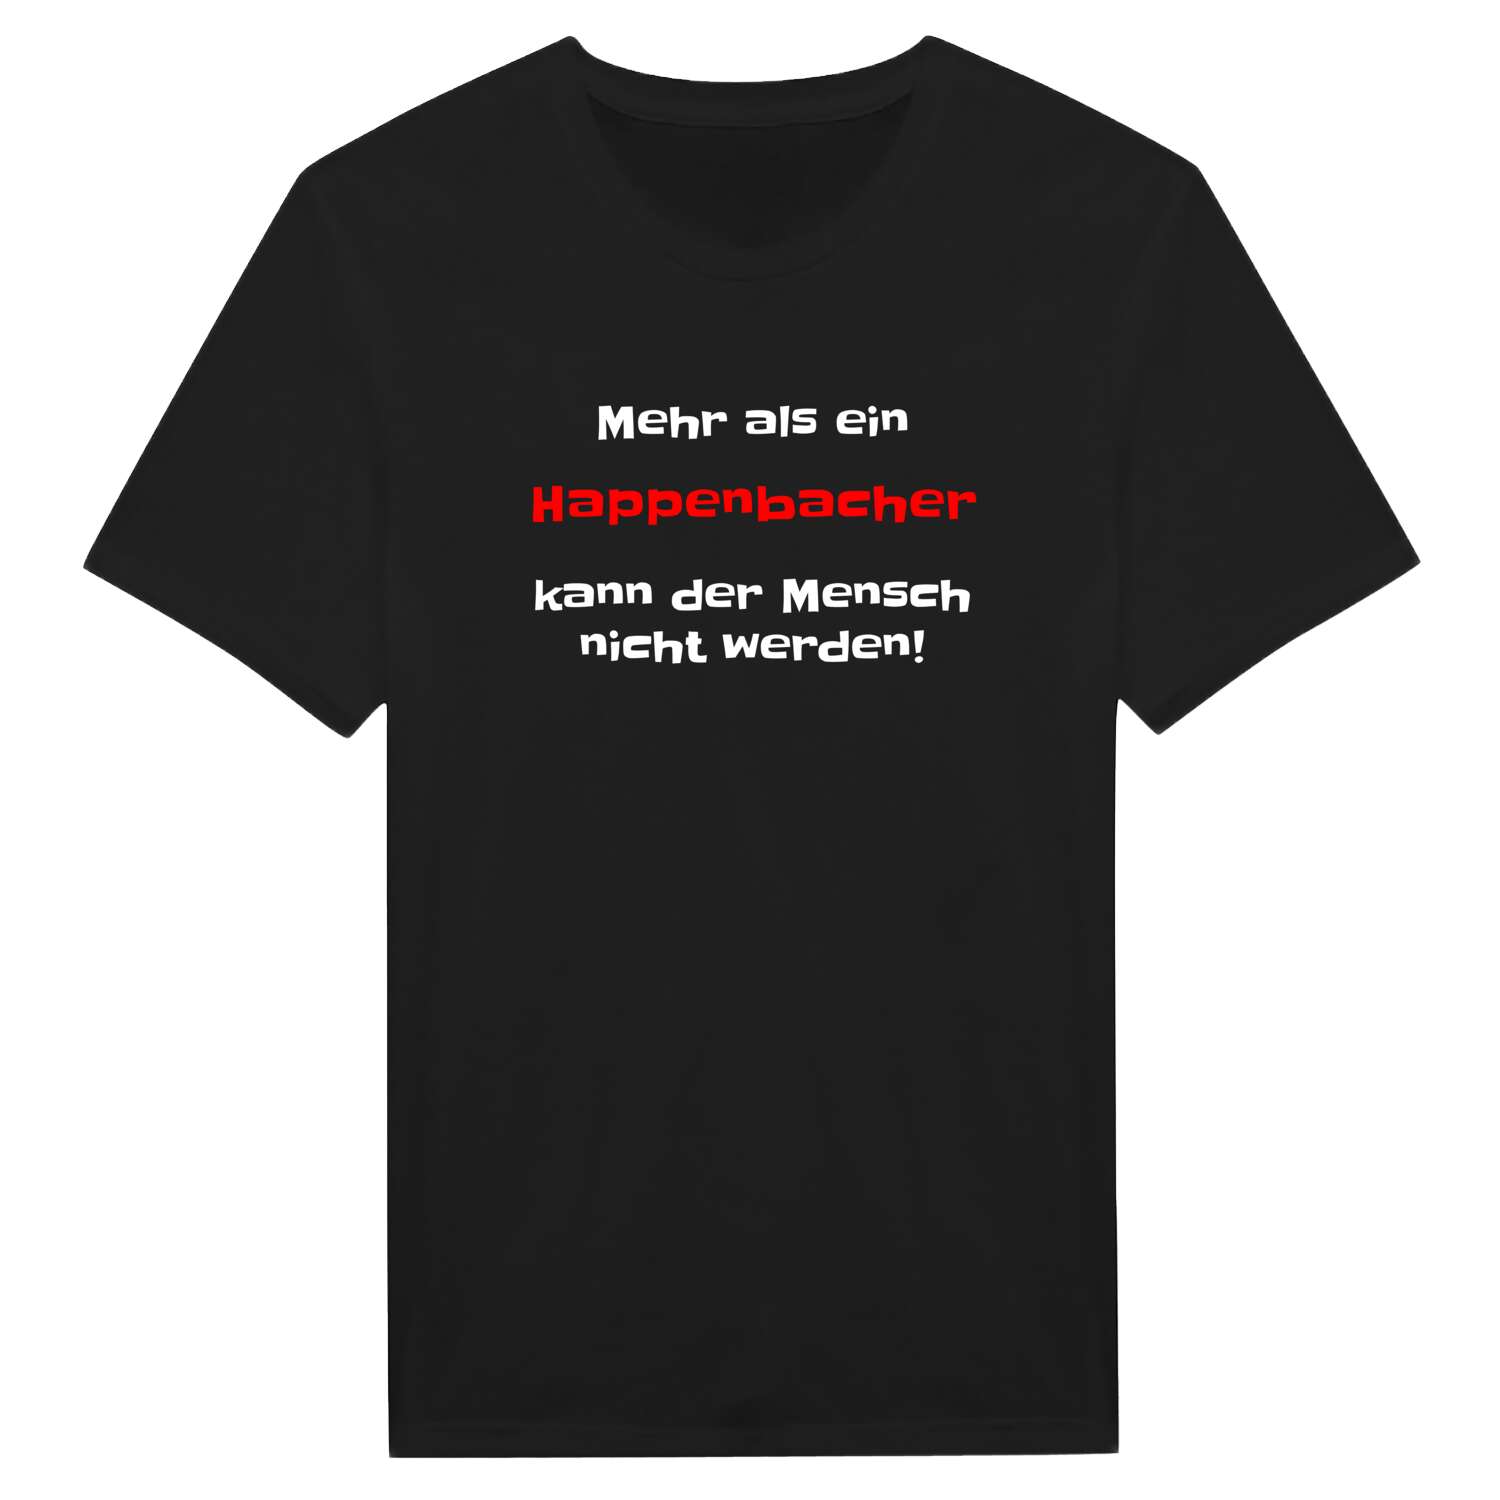 Happenbach T-Shirt »Mehr als ein«